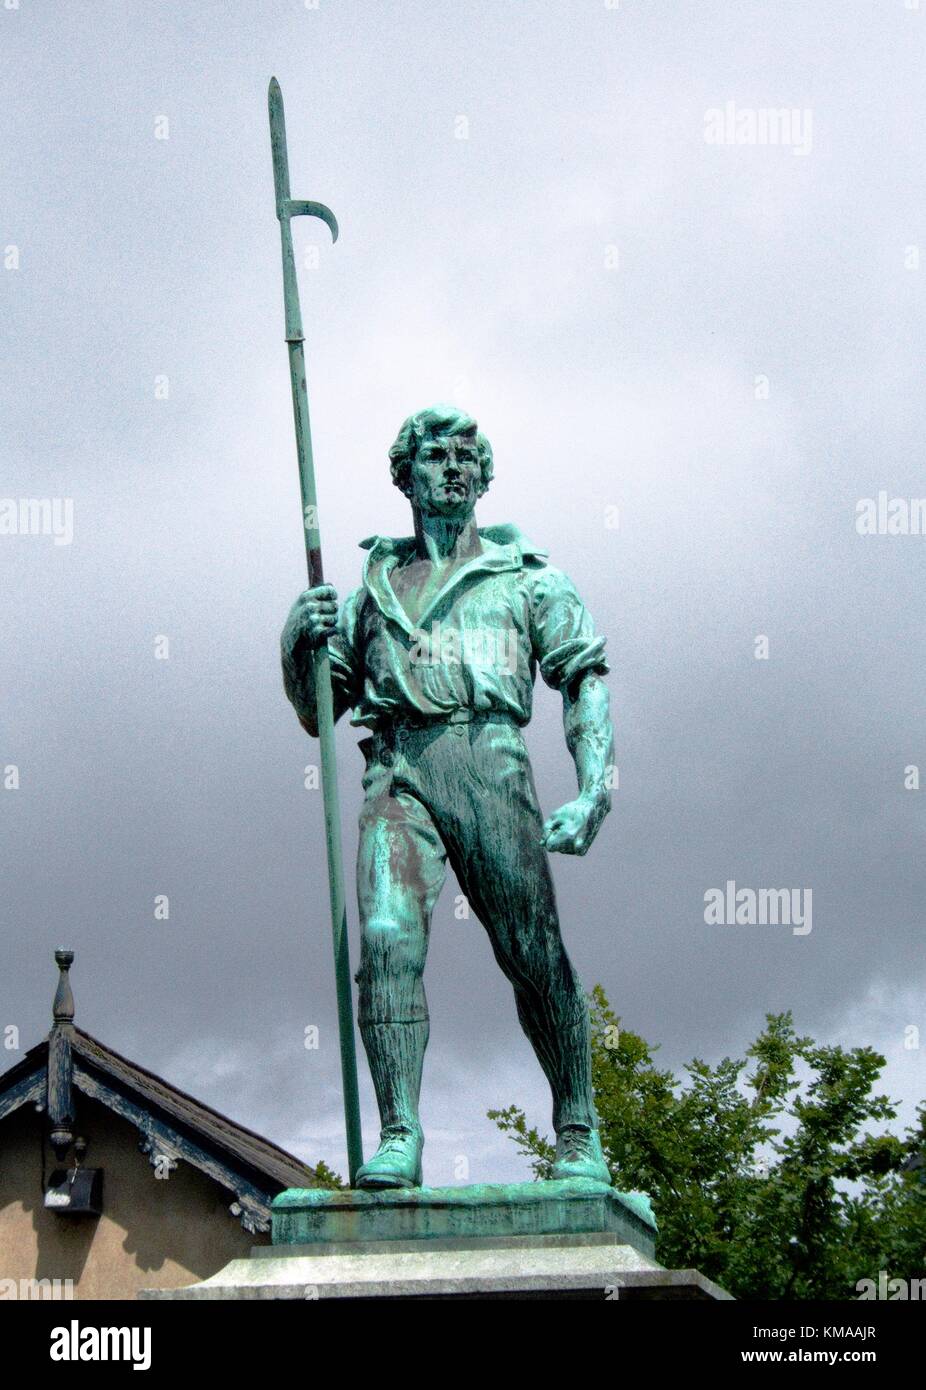 Le mémorial 1798 à Wexford Ville de rebelles irlandais tenant une pike marque le lever de l'Irlandais contre les Anglais. Banque D'Images